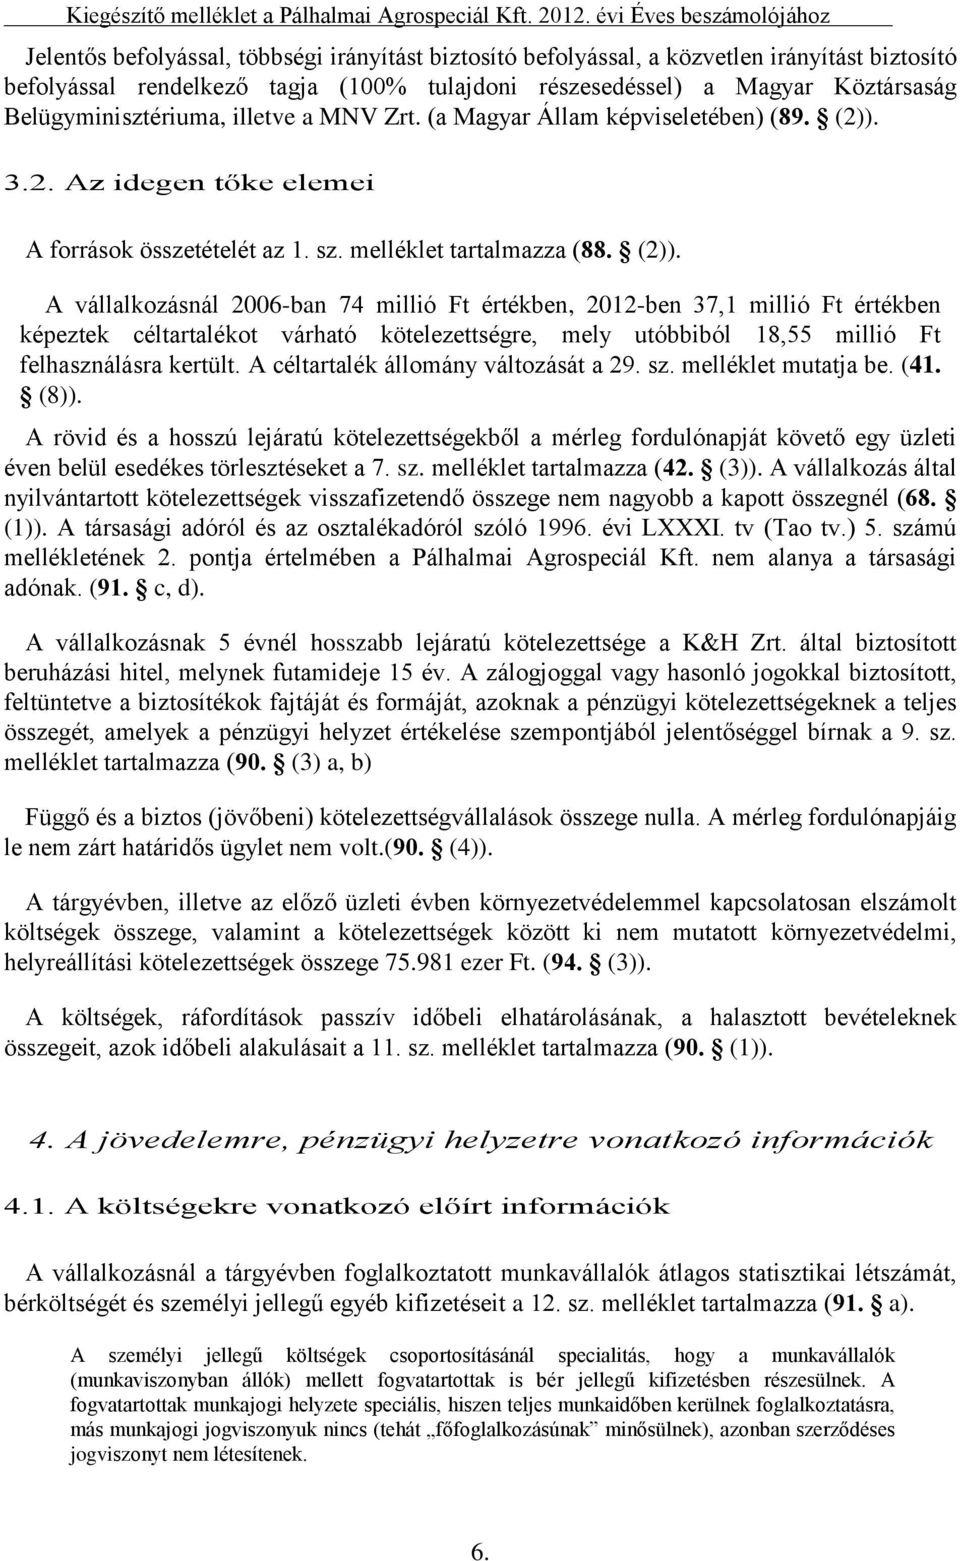 Köztársaság Belügyminisztériuma, illetve a MNV Zrt. (a Magyar Állam képviseletében) (89. (2)).